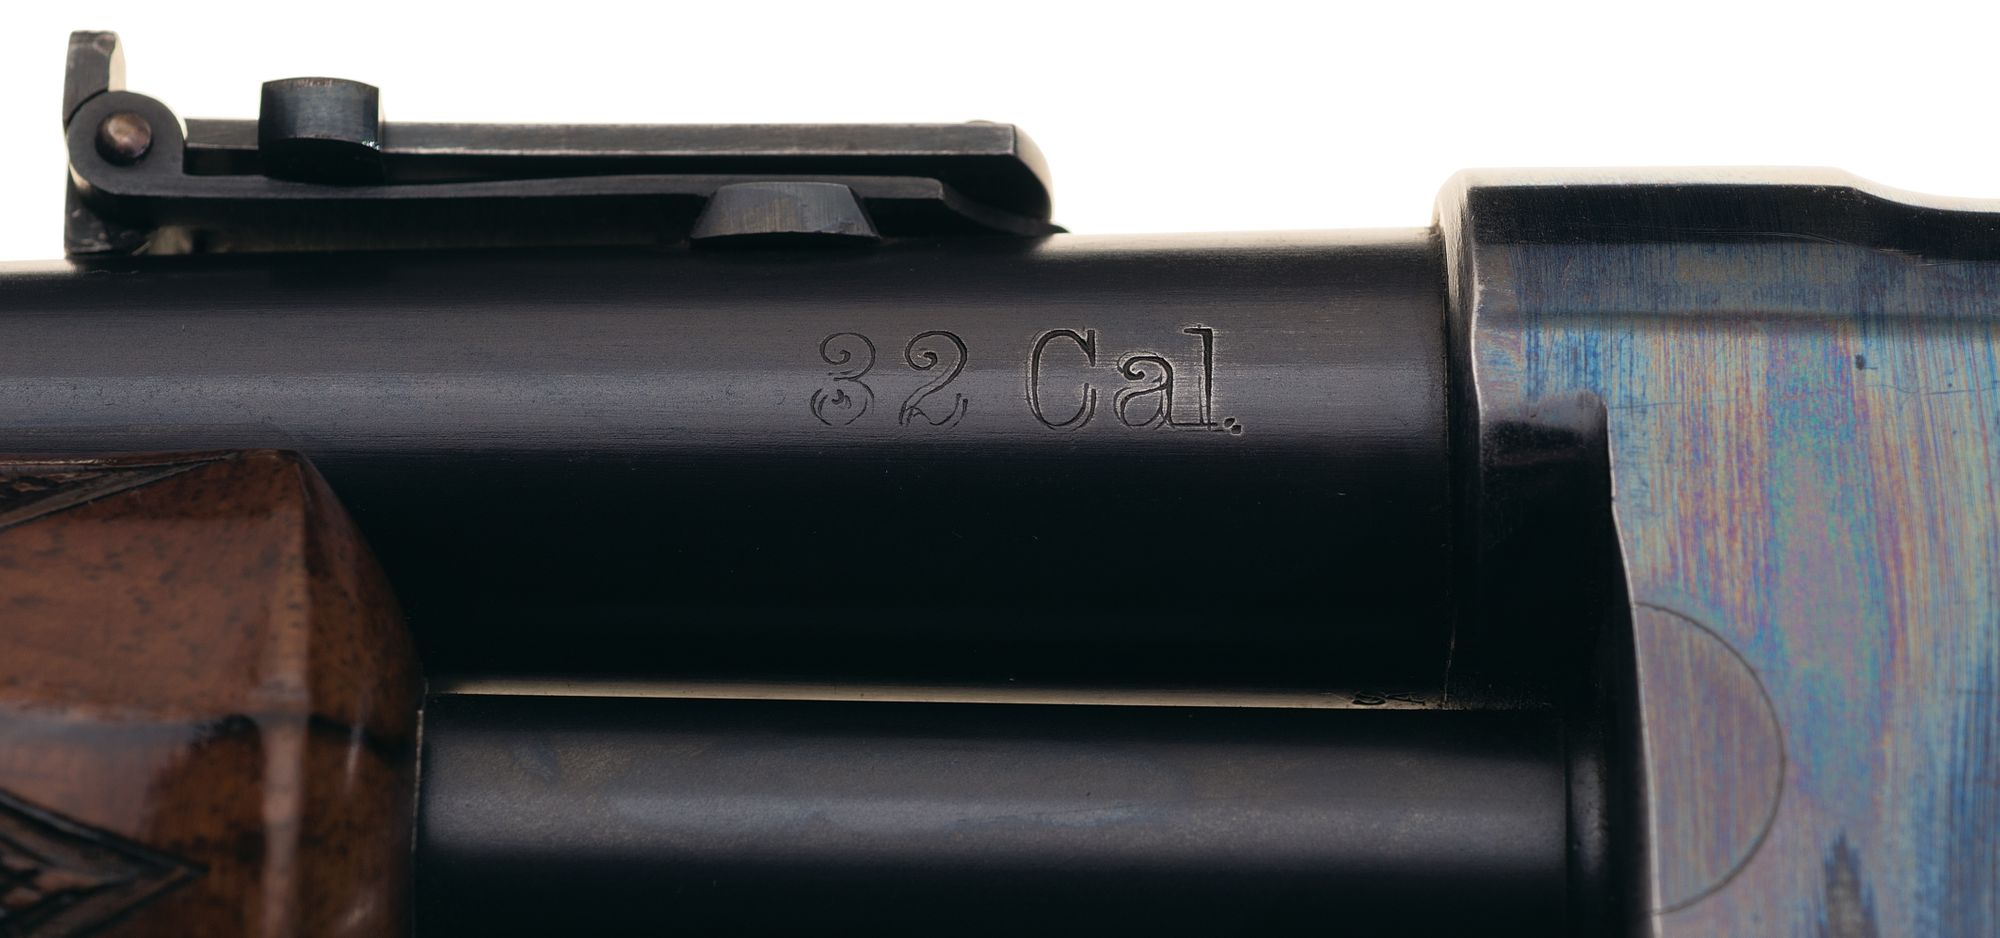 Deluxe Colt Lightning Slide Action Baby Carbine